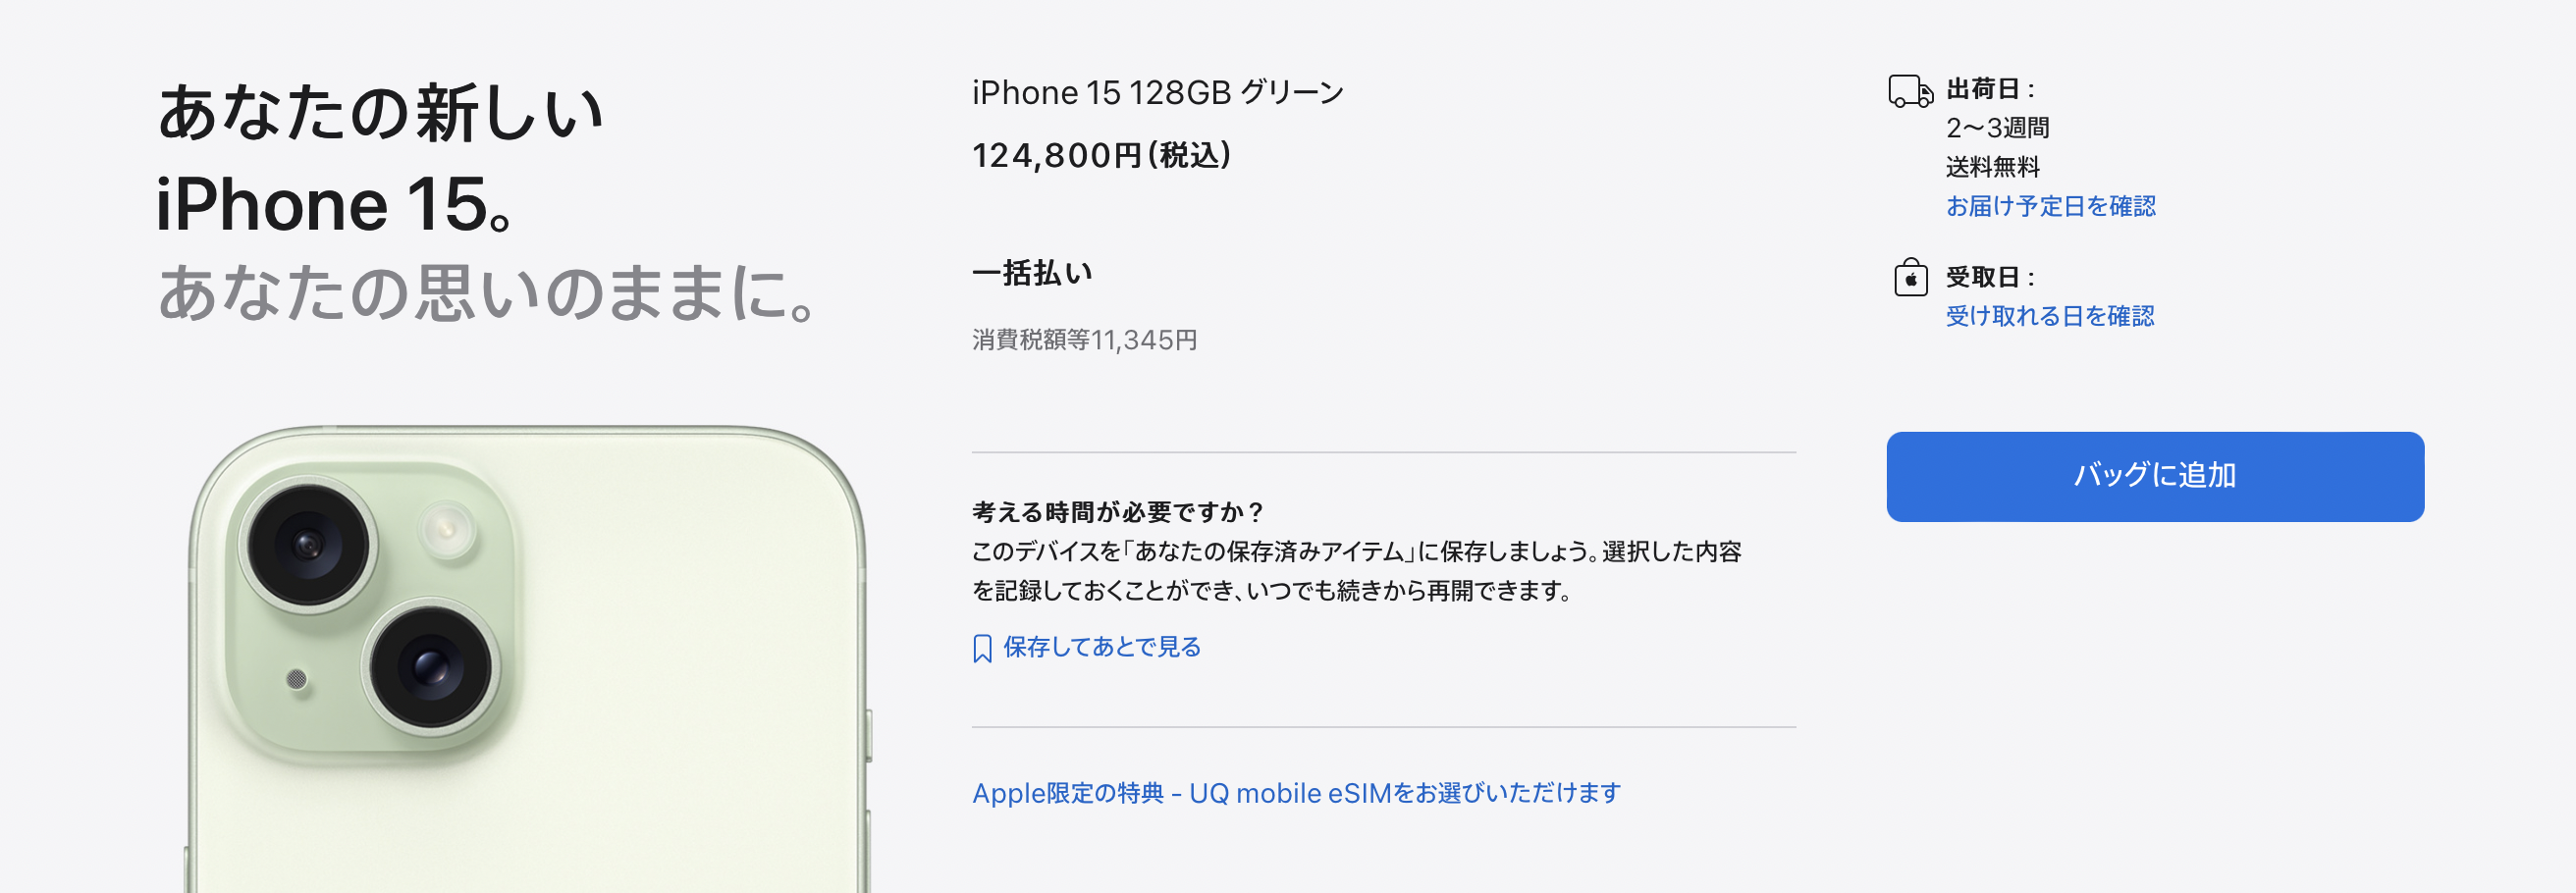 Apple Store ウェブサイト iPhone 15 購入